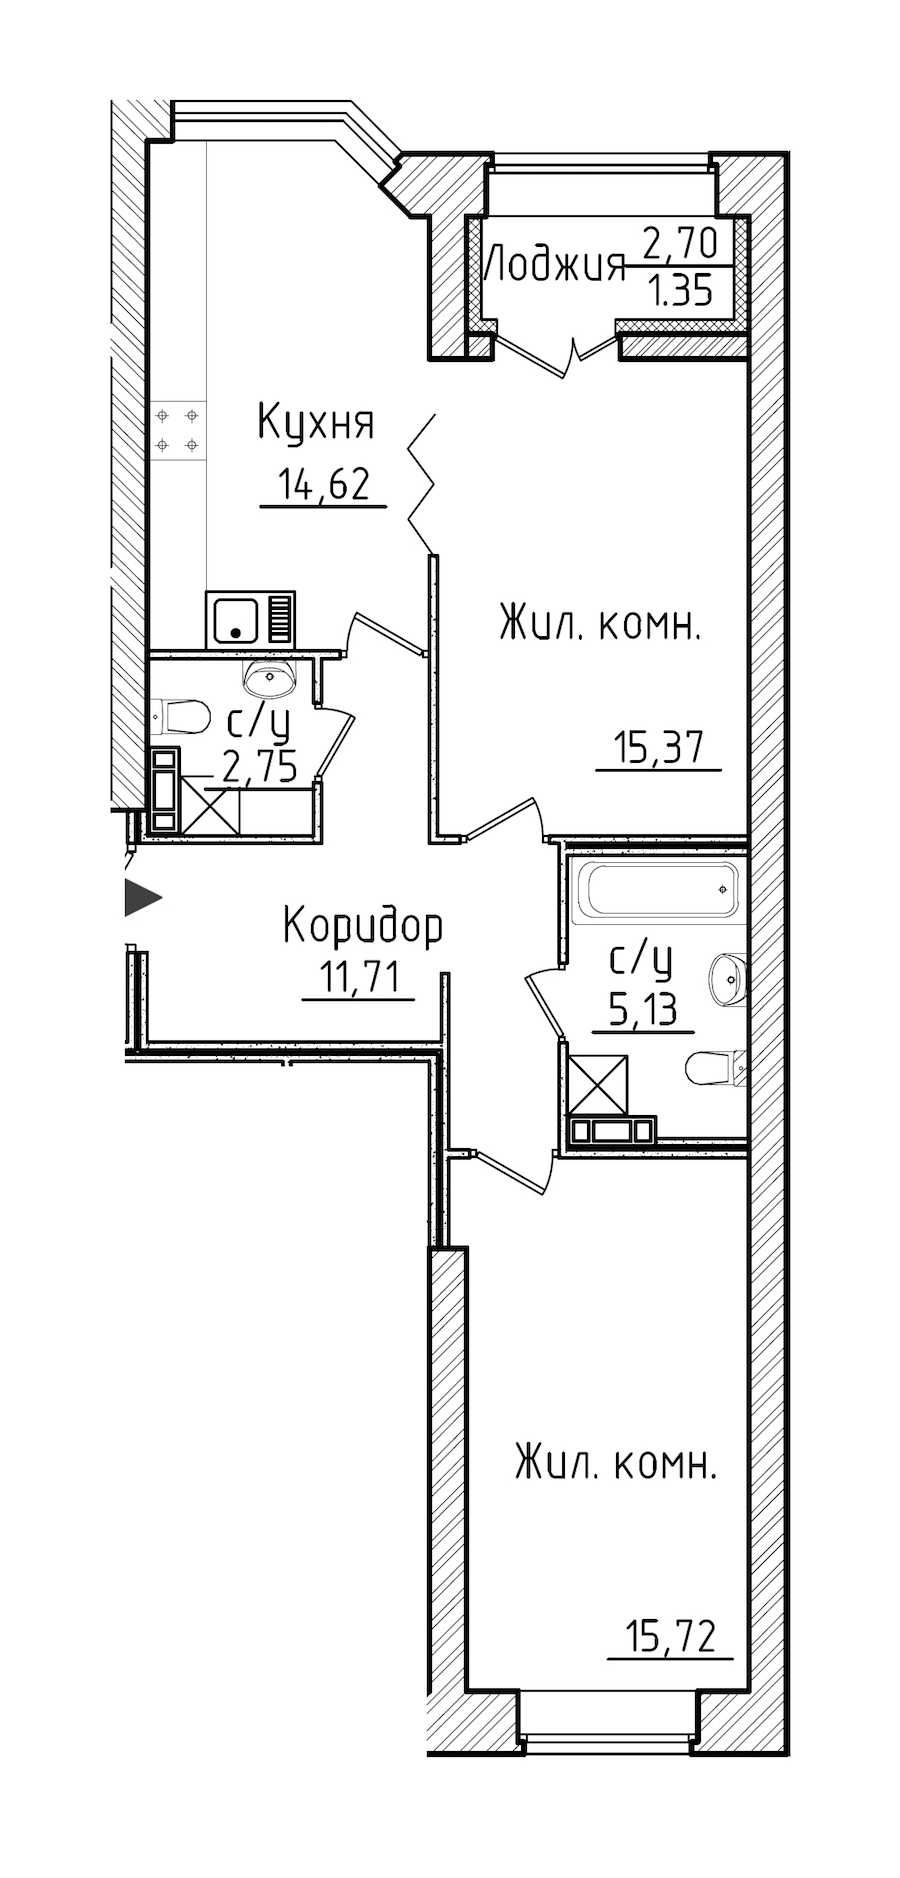 Двухкомнатная квартира в Строительный трест: площадь 66.65 м2 , этаж: 5 – купить в Санкт-Петербурге